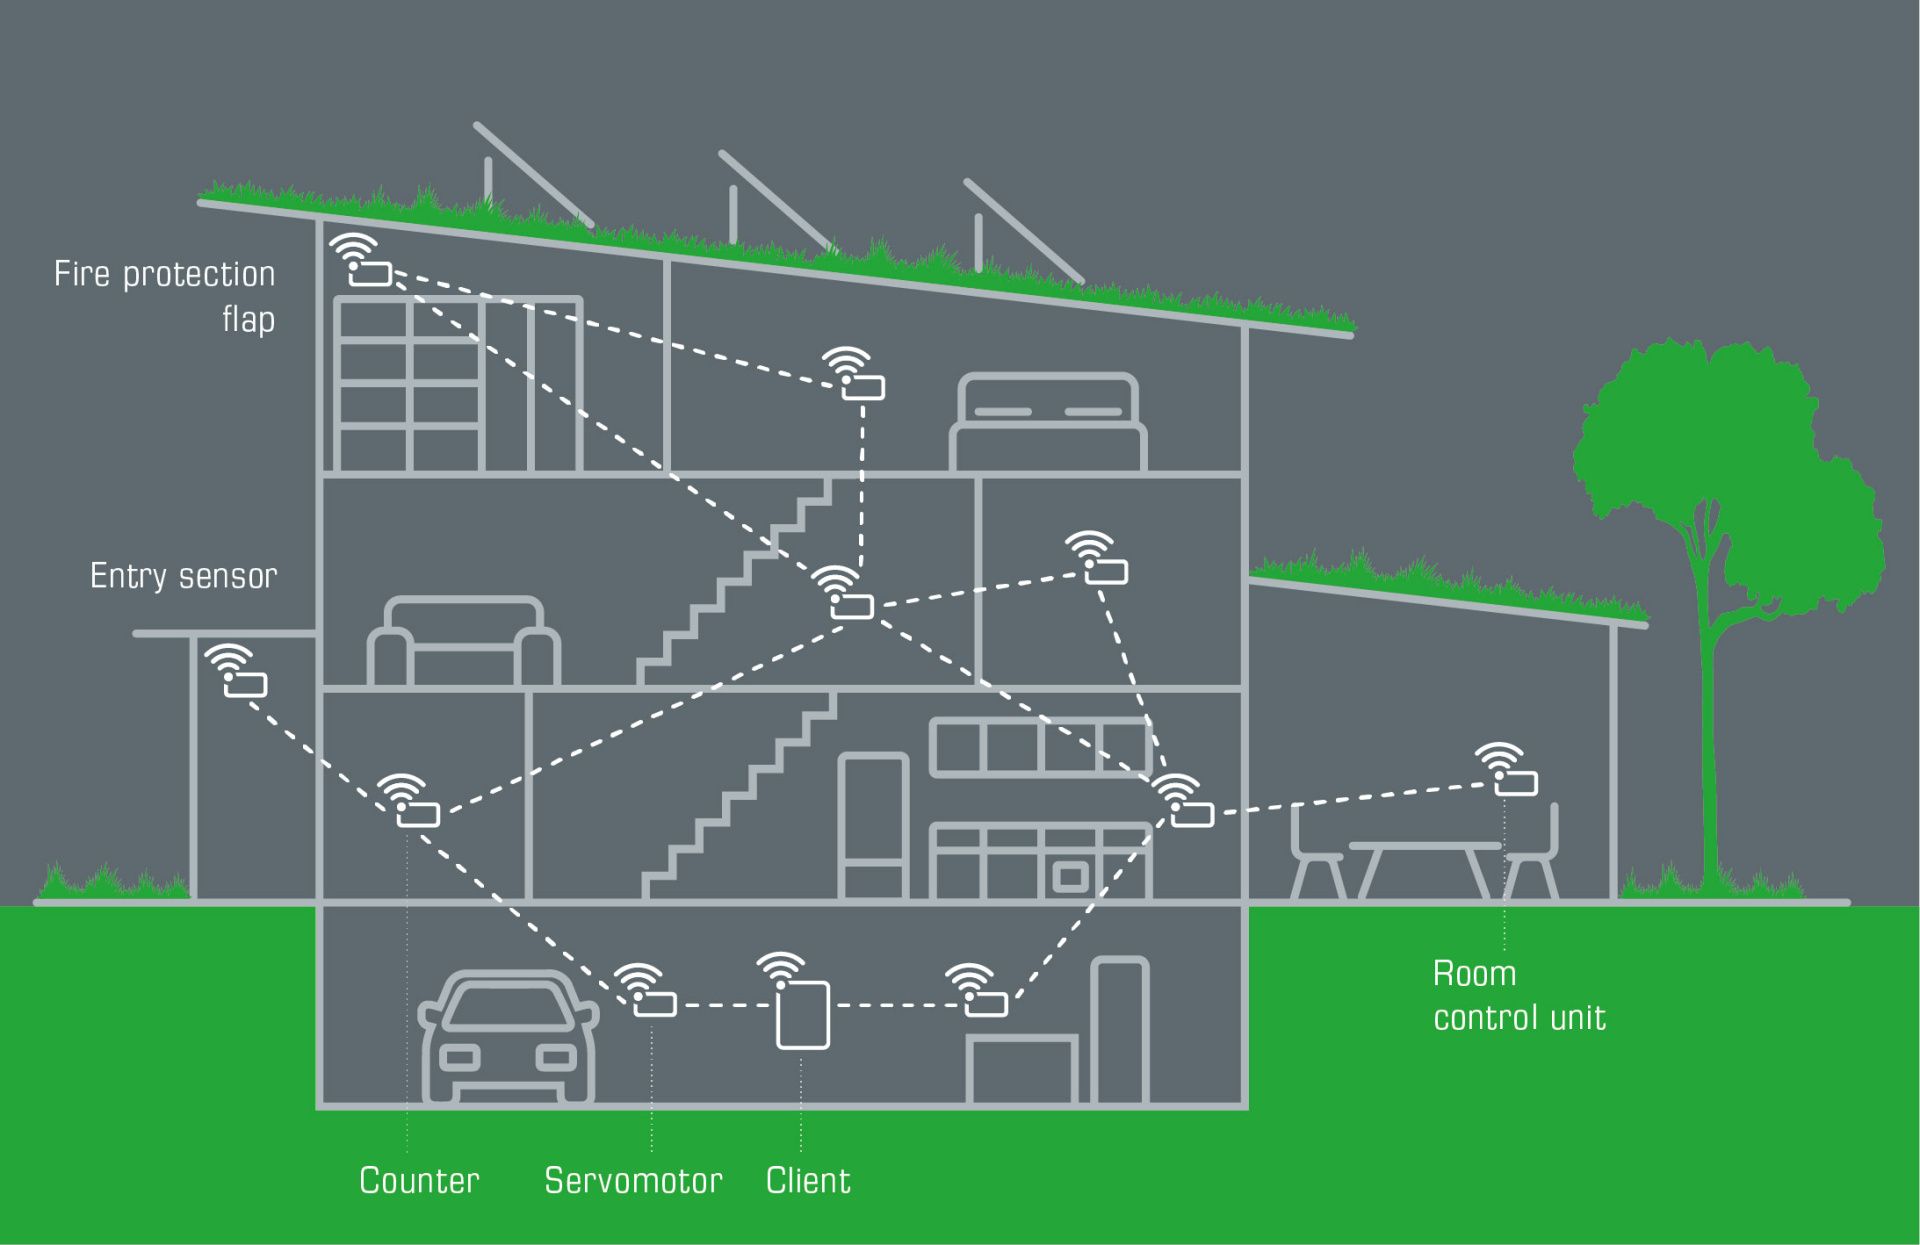 Визуализация сечения дома с различными датчиками W-Modbus и шлюзом в нижней части подвала.